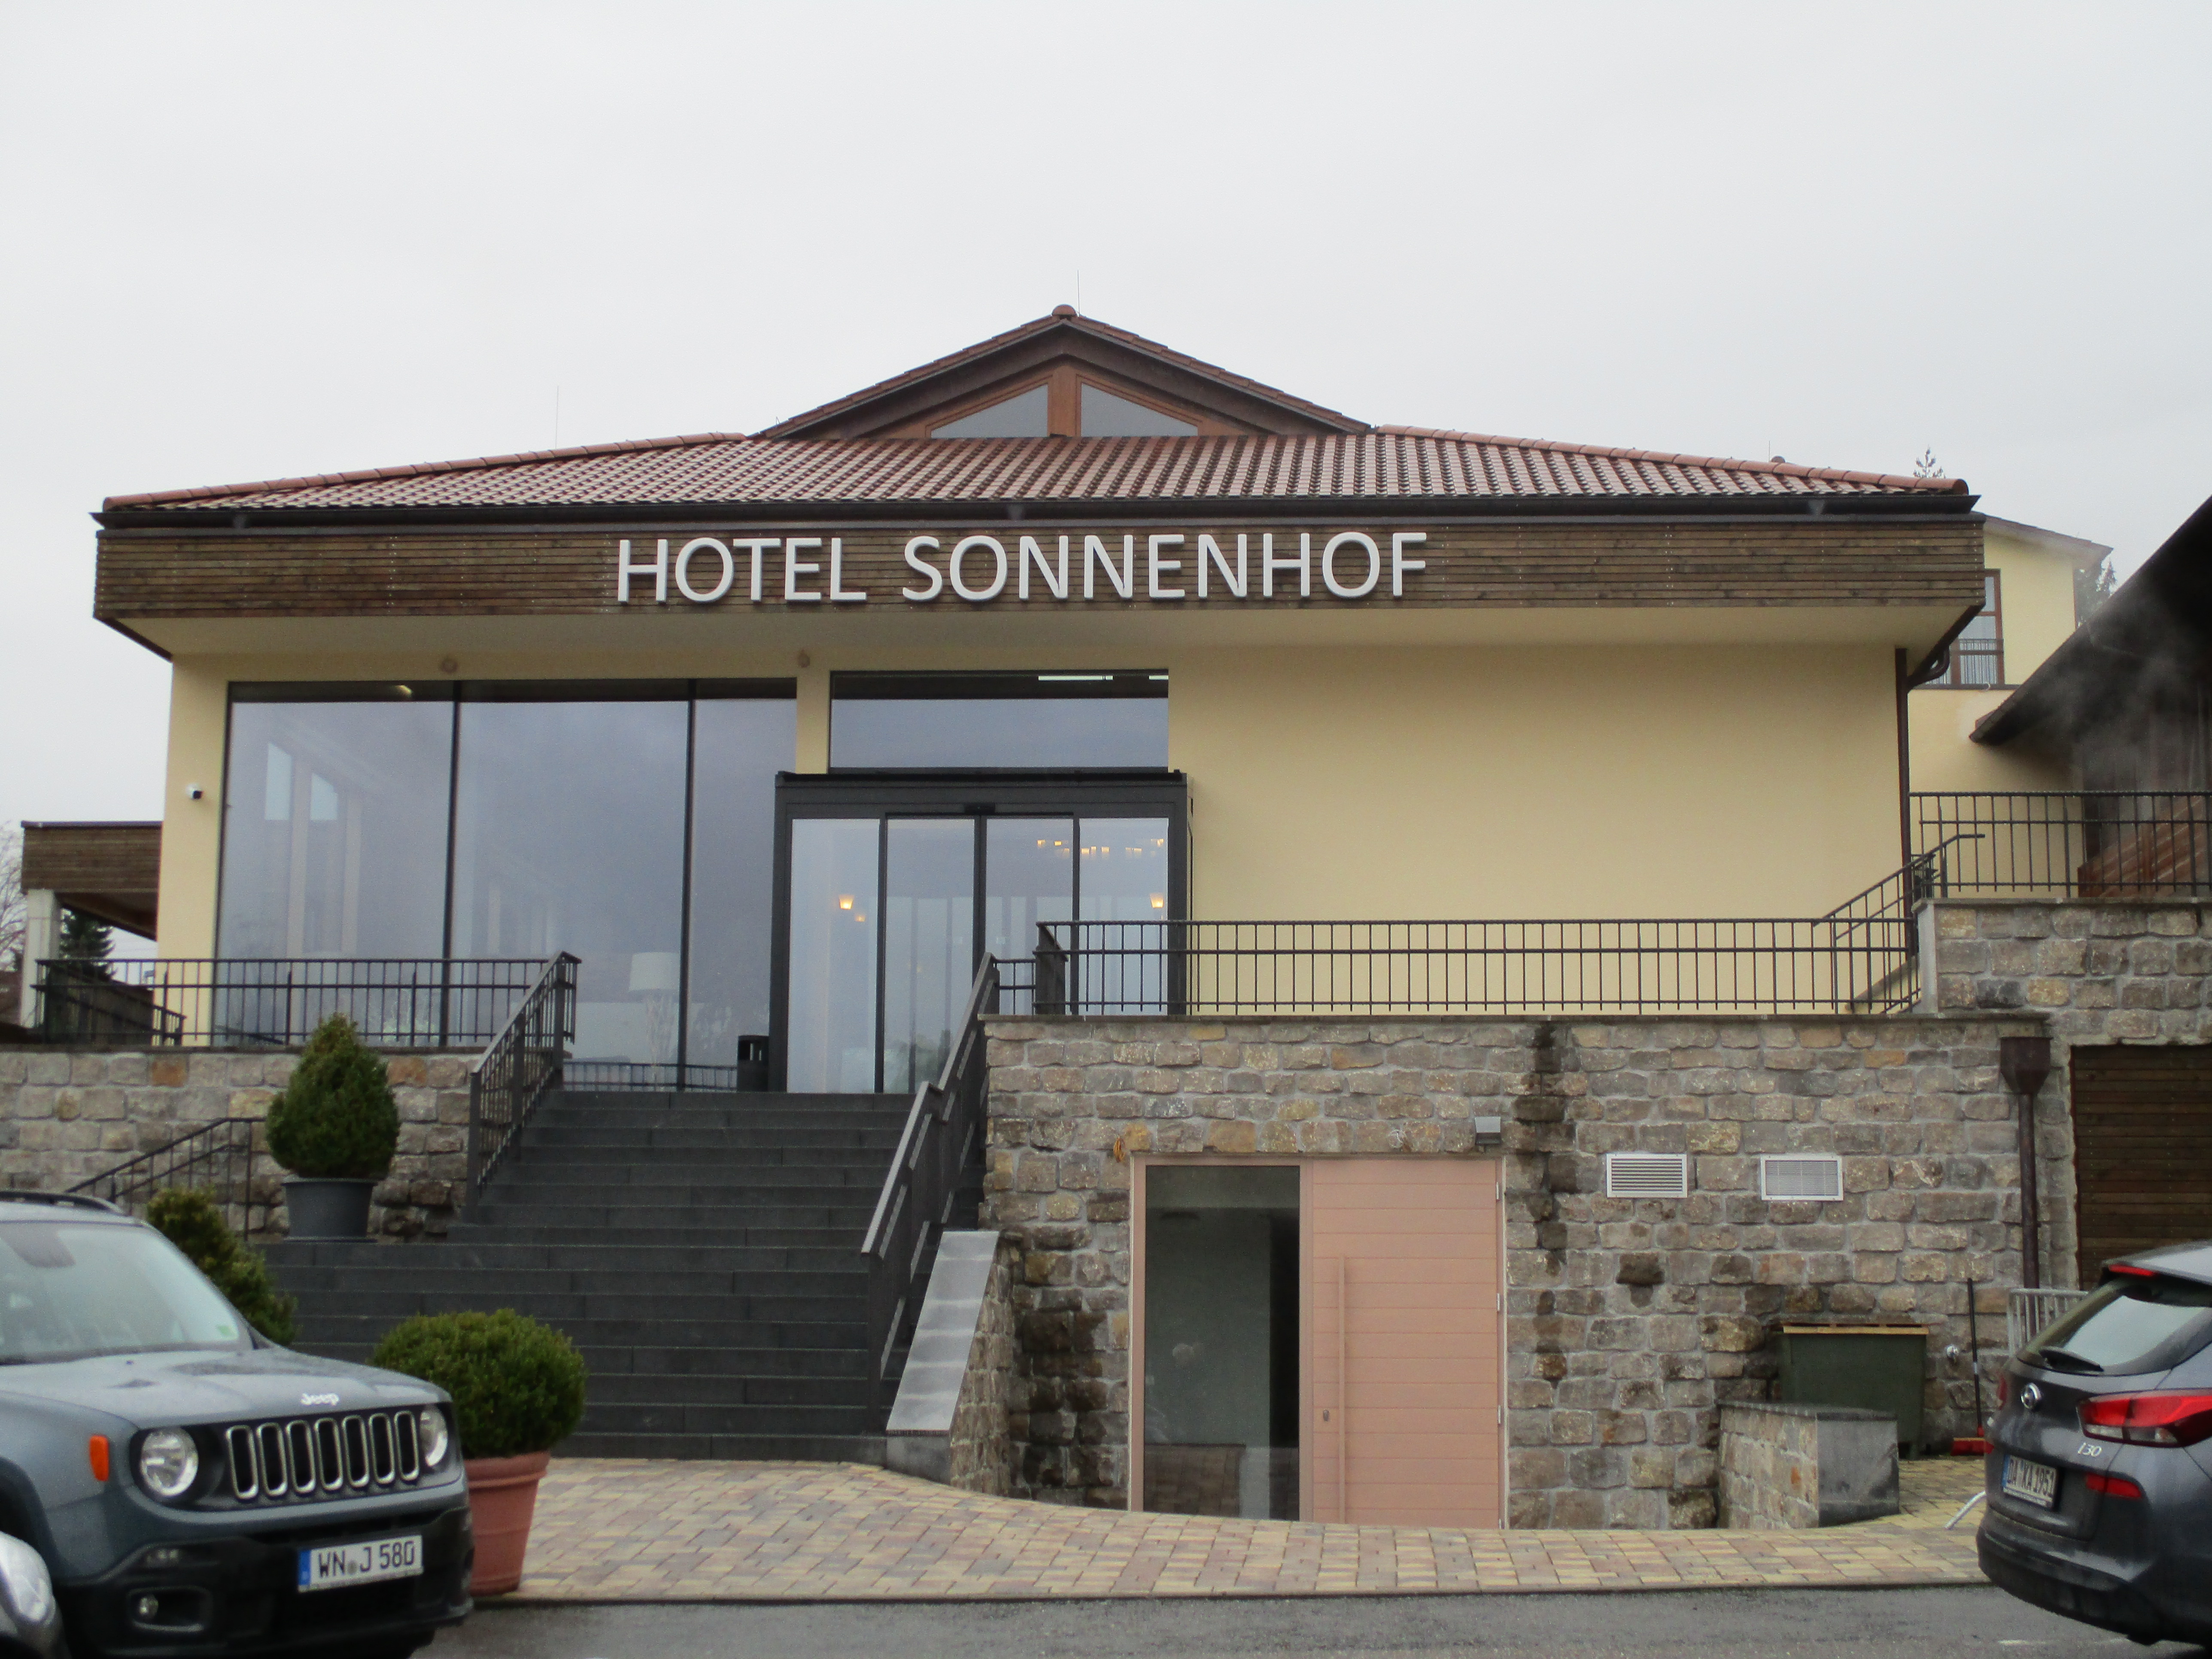 Bild 5 Hotel Sonnenhof - K. Ferber Gastronomiebetrieb seit 1950 Vermögensverwaltung UG in Aspach